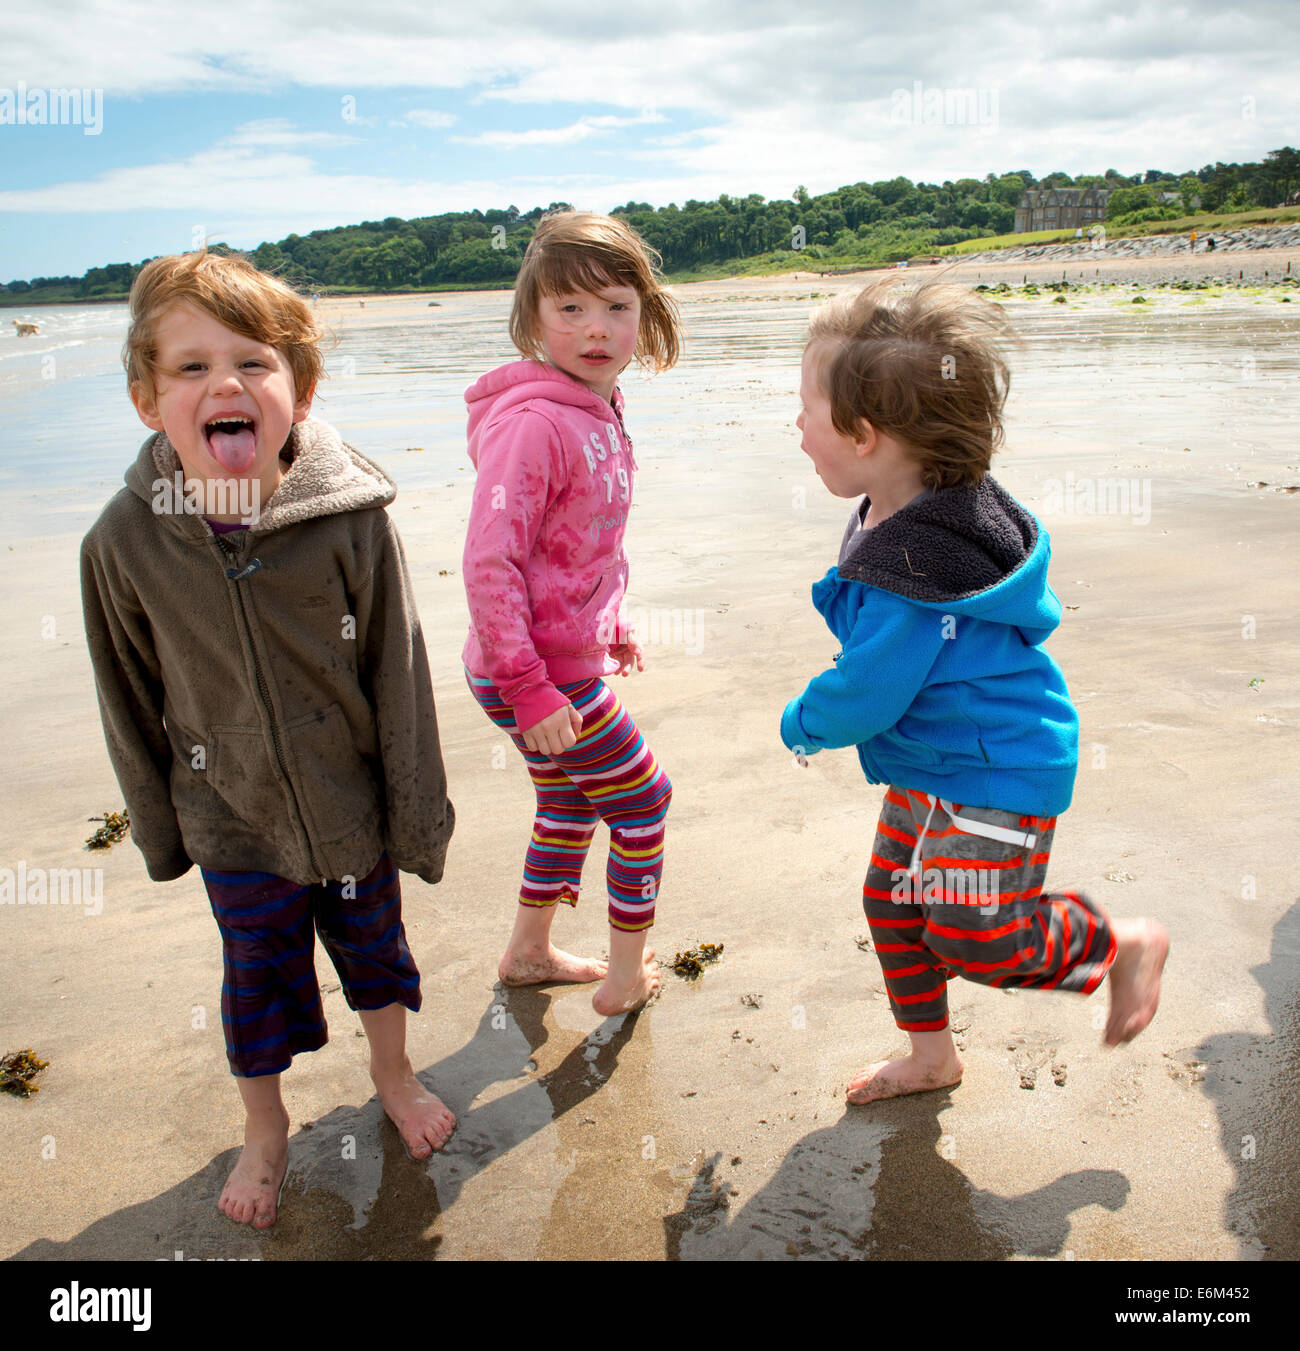 Co. abajo niños jugando en la playa Crawfordsburn Irlanda del Norte. Foto de stock